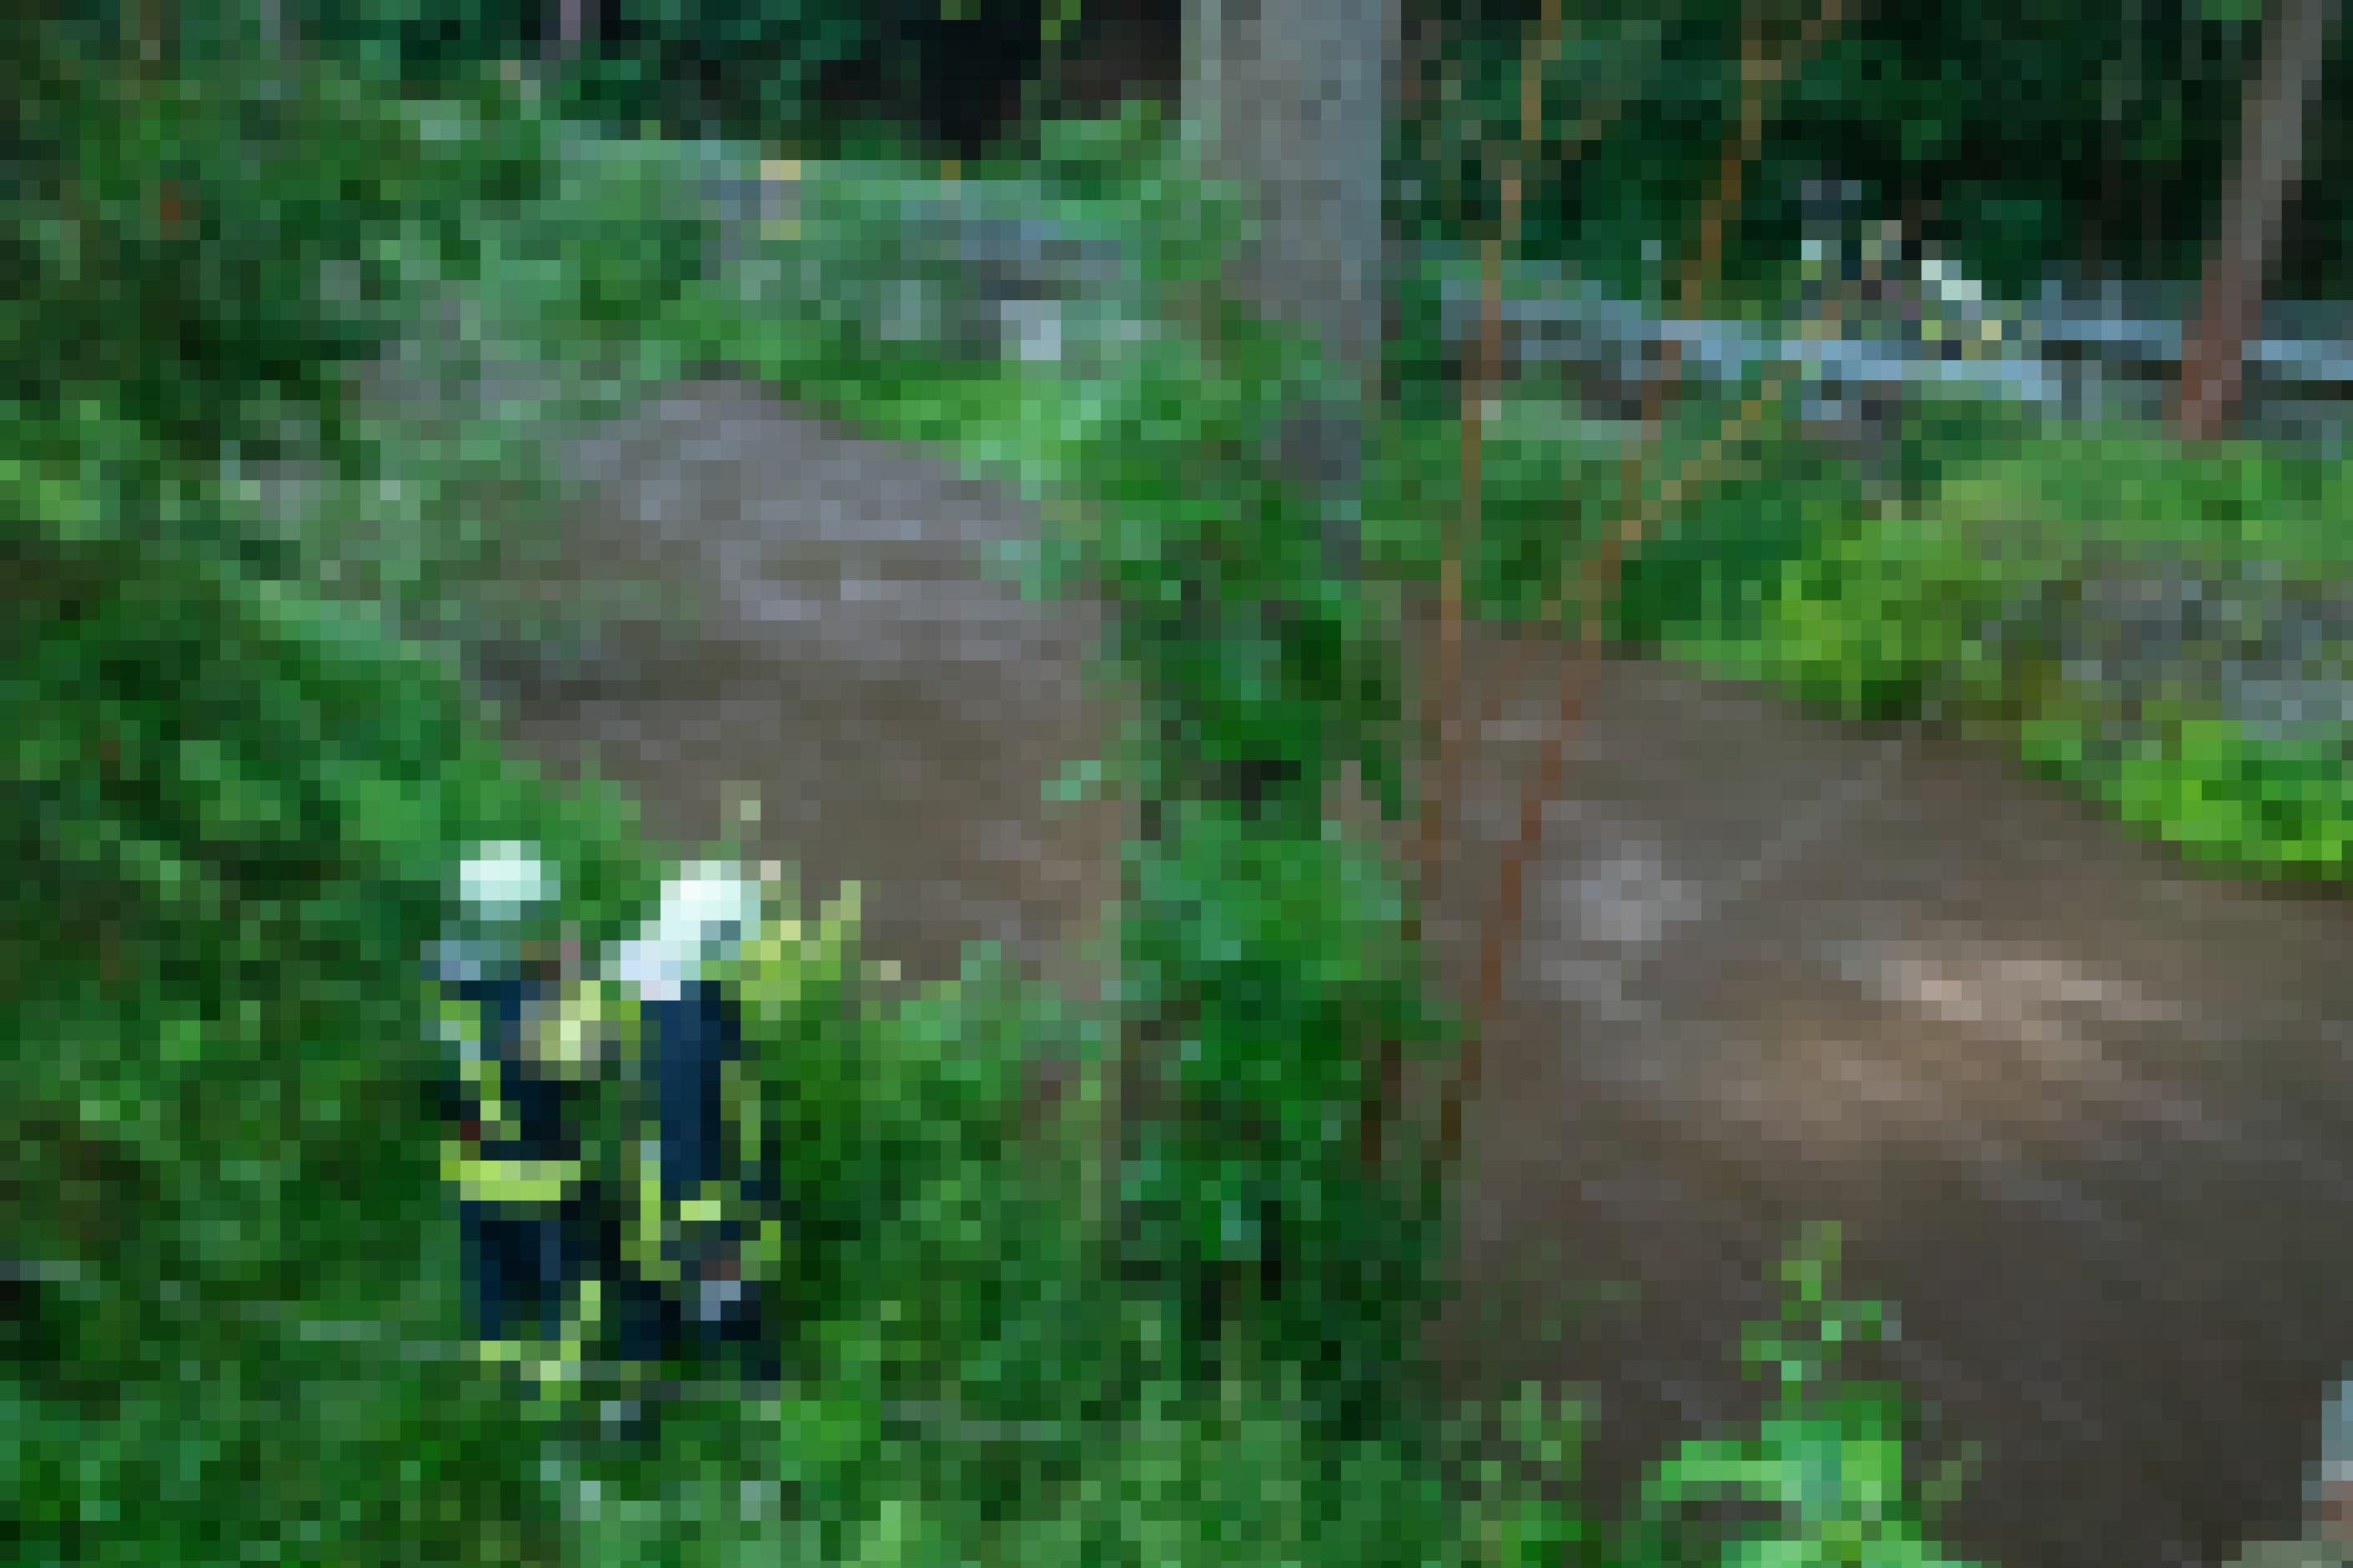 Brauner Bach mit grünem Uferbewuchs, fünf Feuerwehrleute am Ufer schauen ins Wasser.